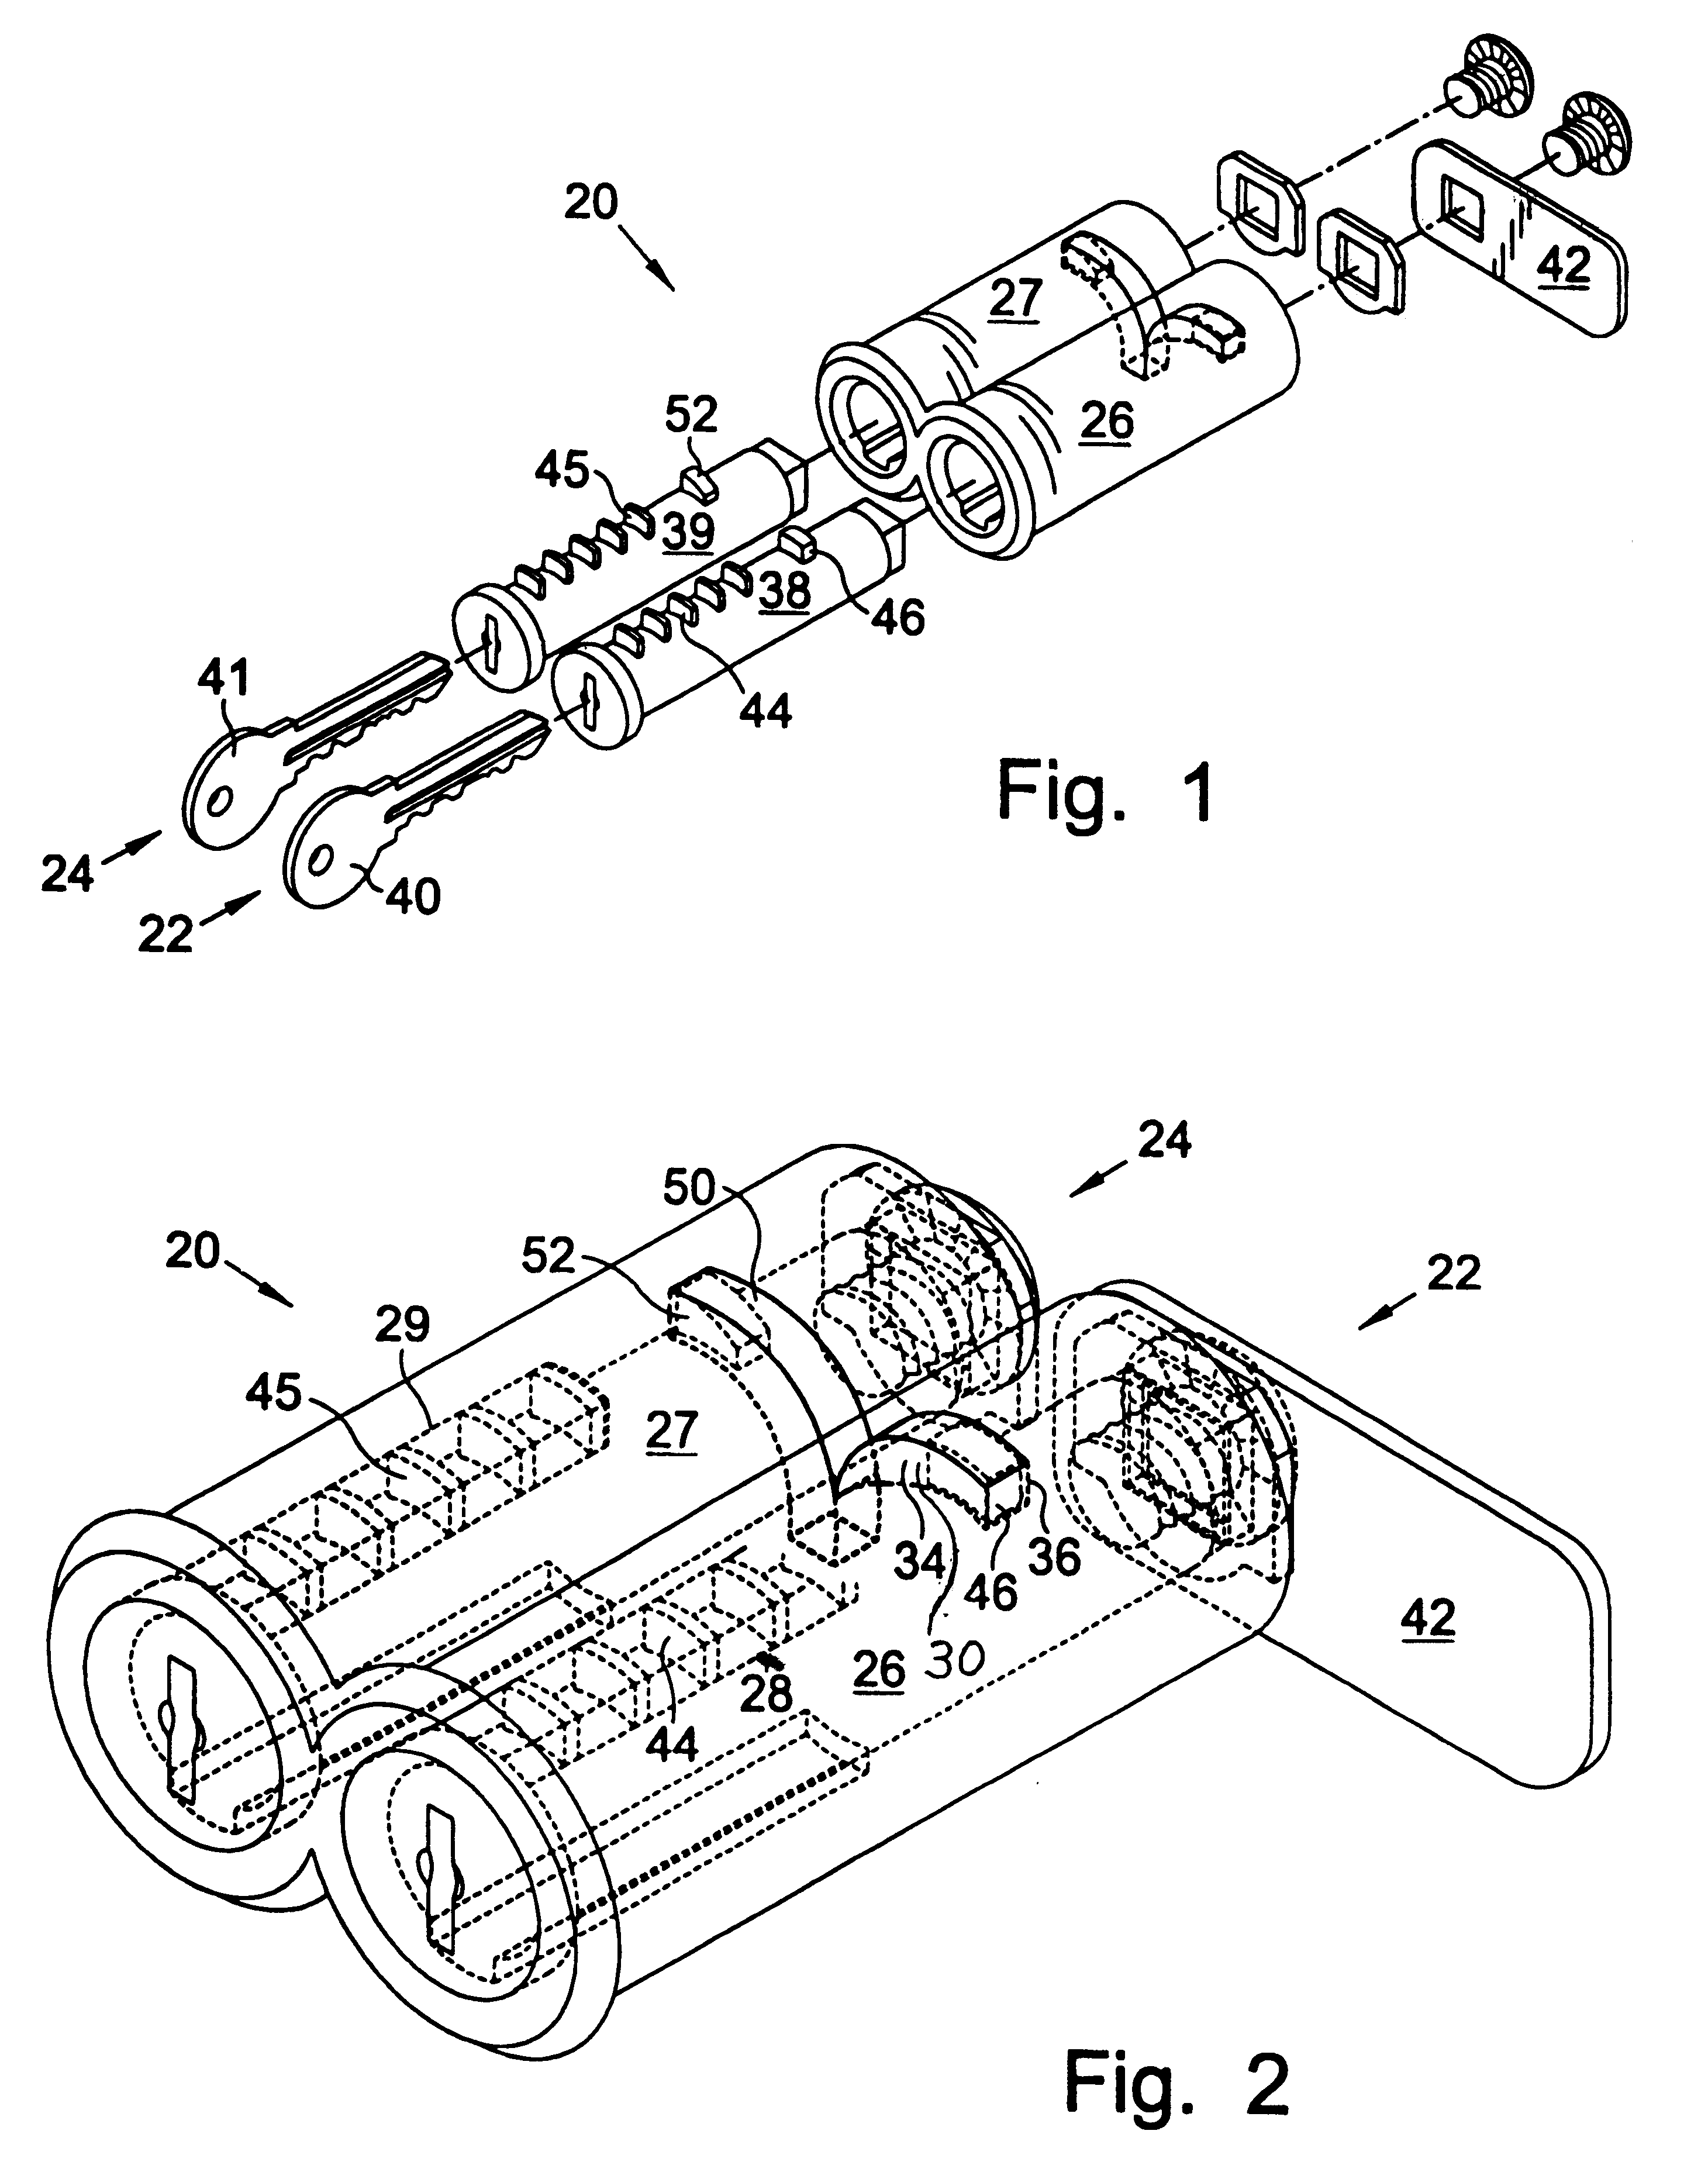 Key retaining lock apparatus